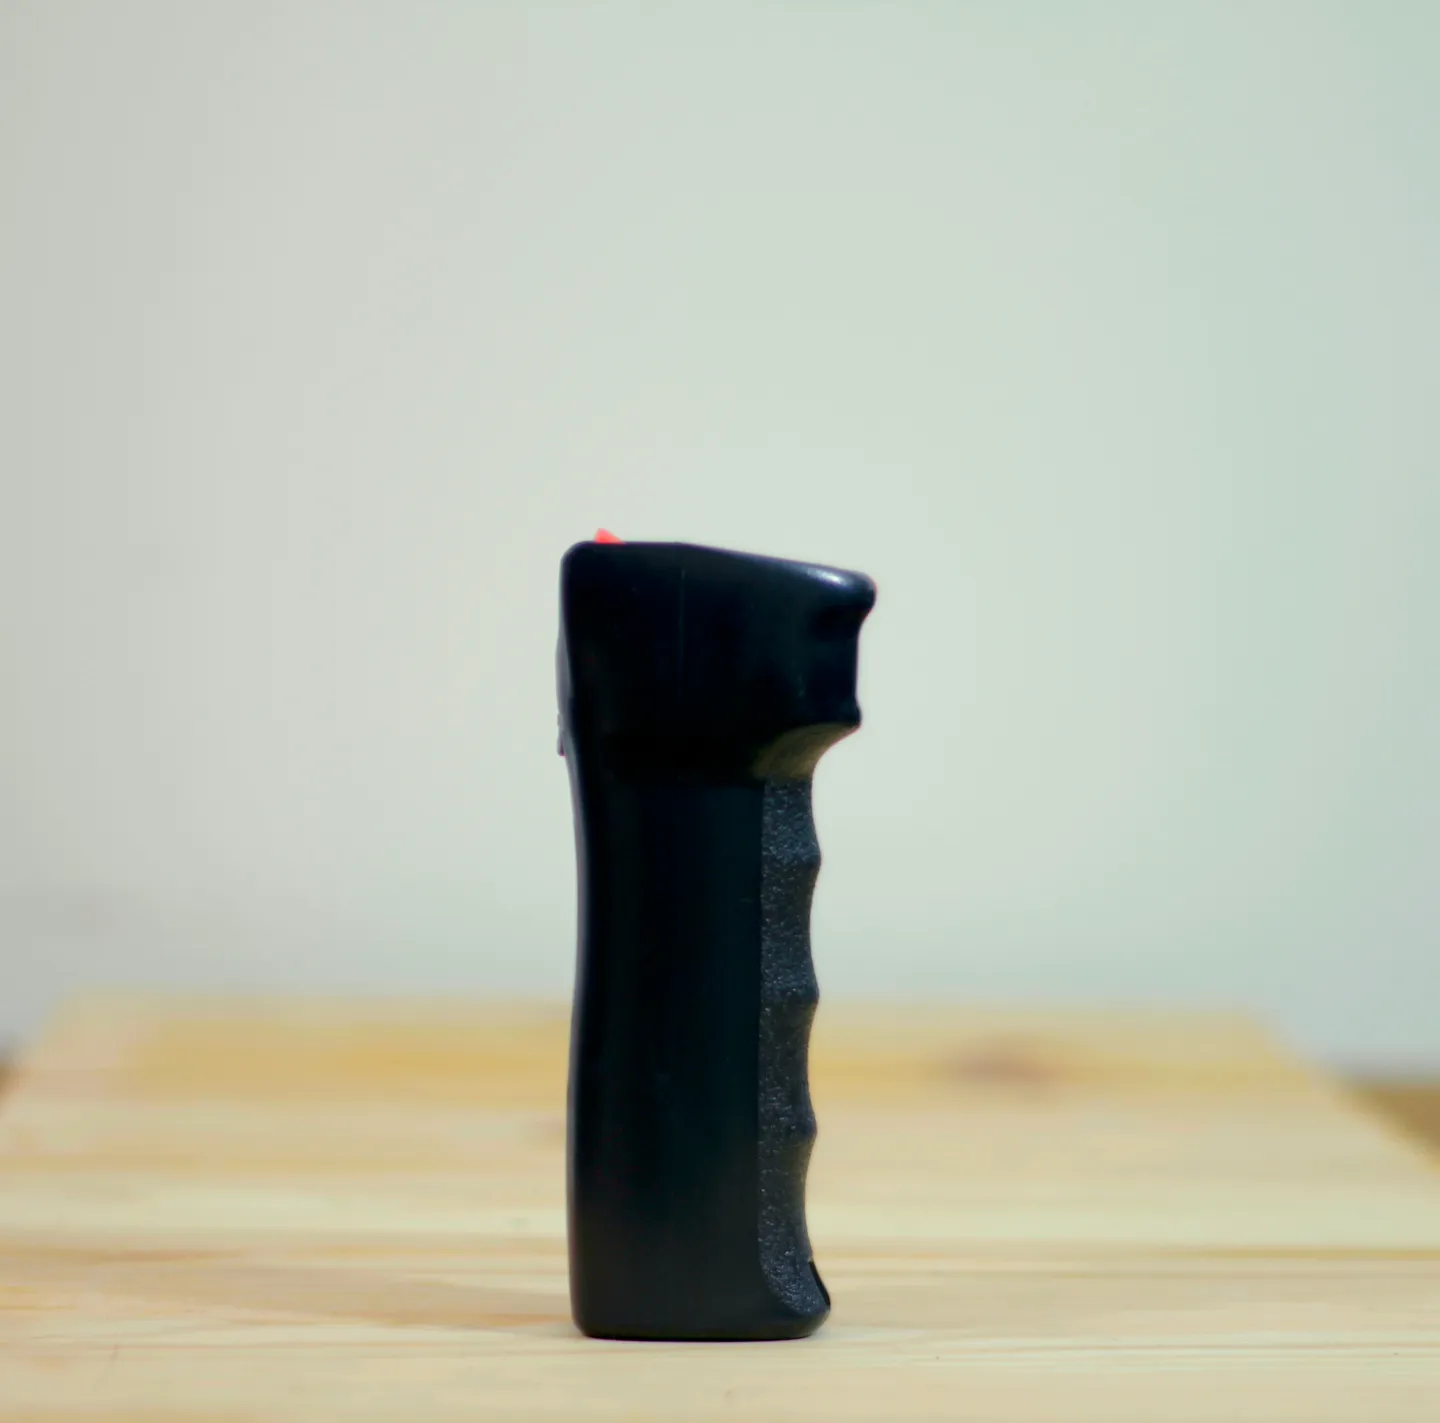 Bombe Lacrymogène - Nouvelle génération de spray de défense StopAttack 30 ml Un choix professionnel et ergonomique pour tous